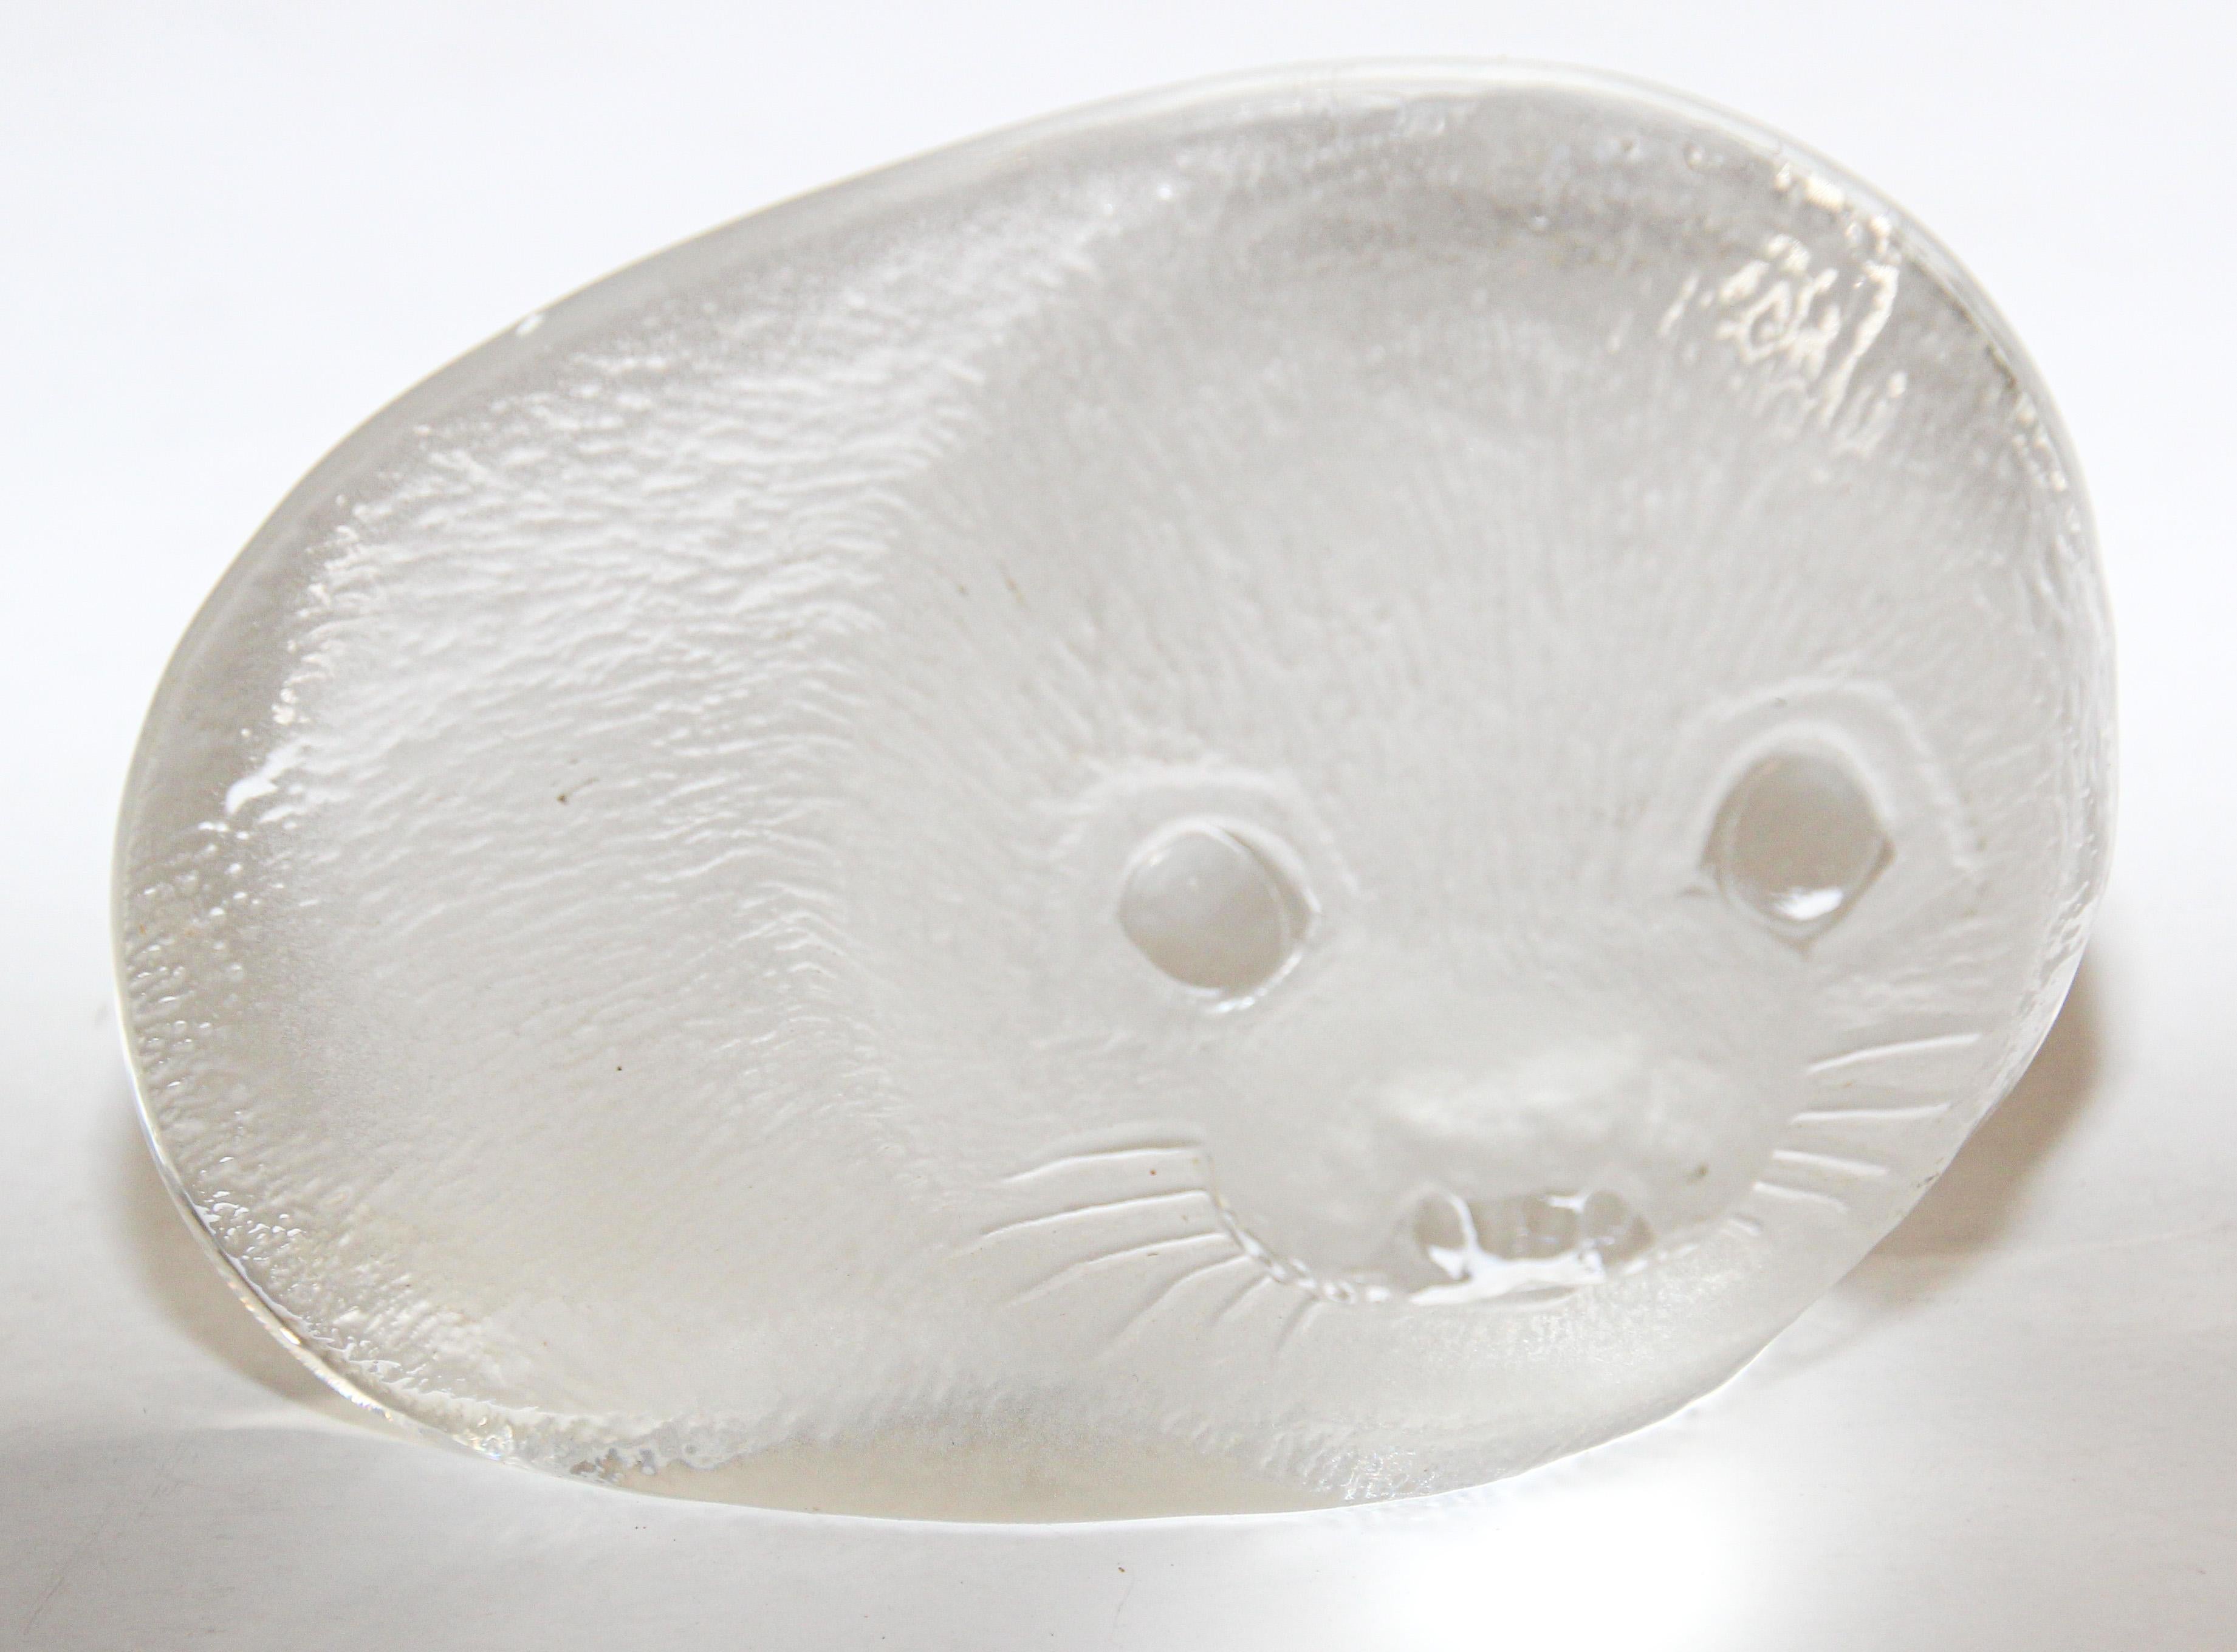 Sculpture en cristal gravé d'un bébé phoque par Mats Jonasson Suède. 
Cette sculpture en verre d'art en cristal est une œuvre d'art avec ses détails exquis faits et gravés à la main. 
La gravure très détaillée et le cristal étincelant donnent vie